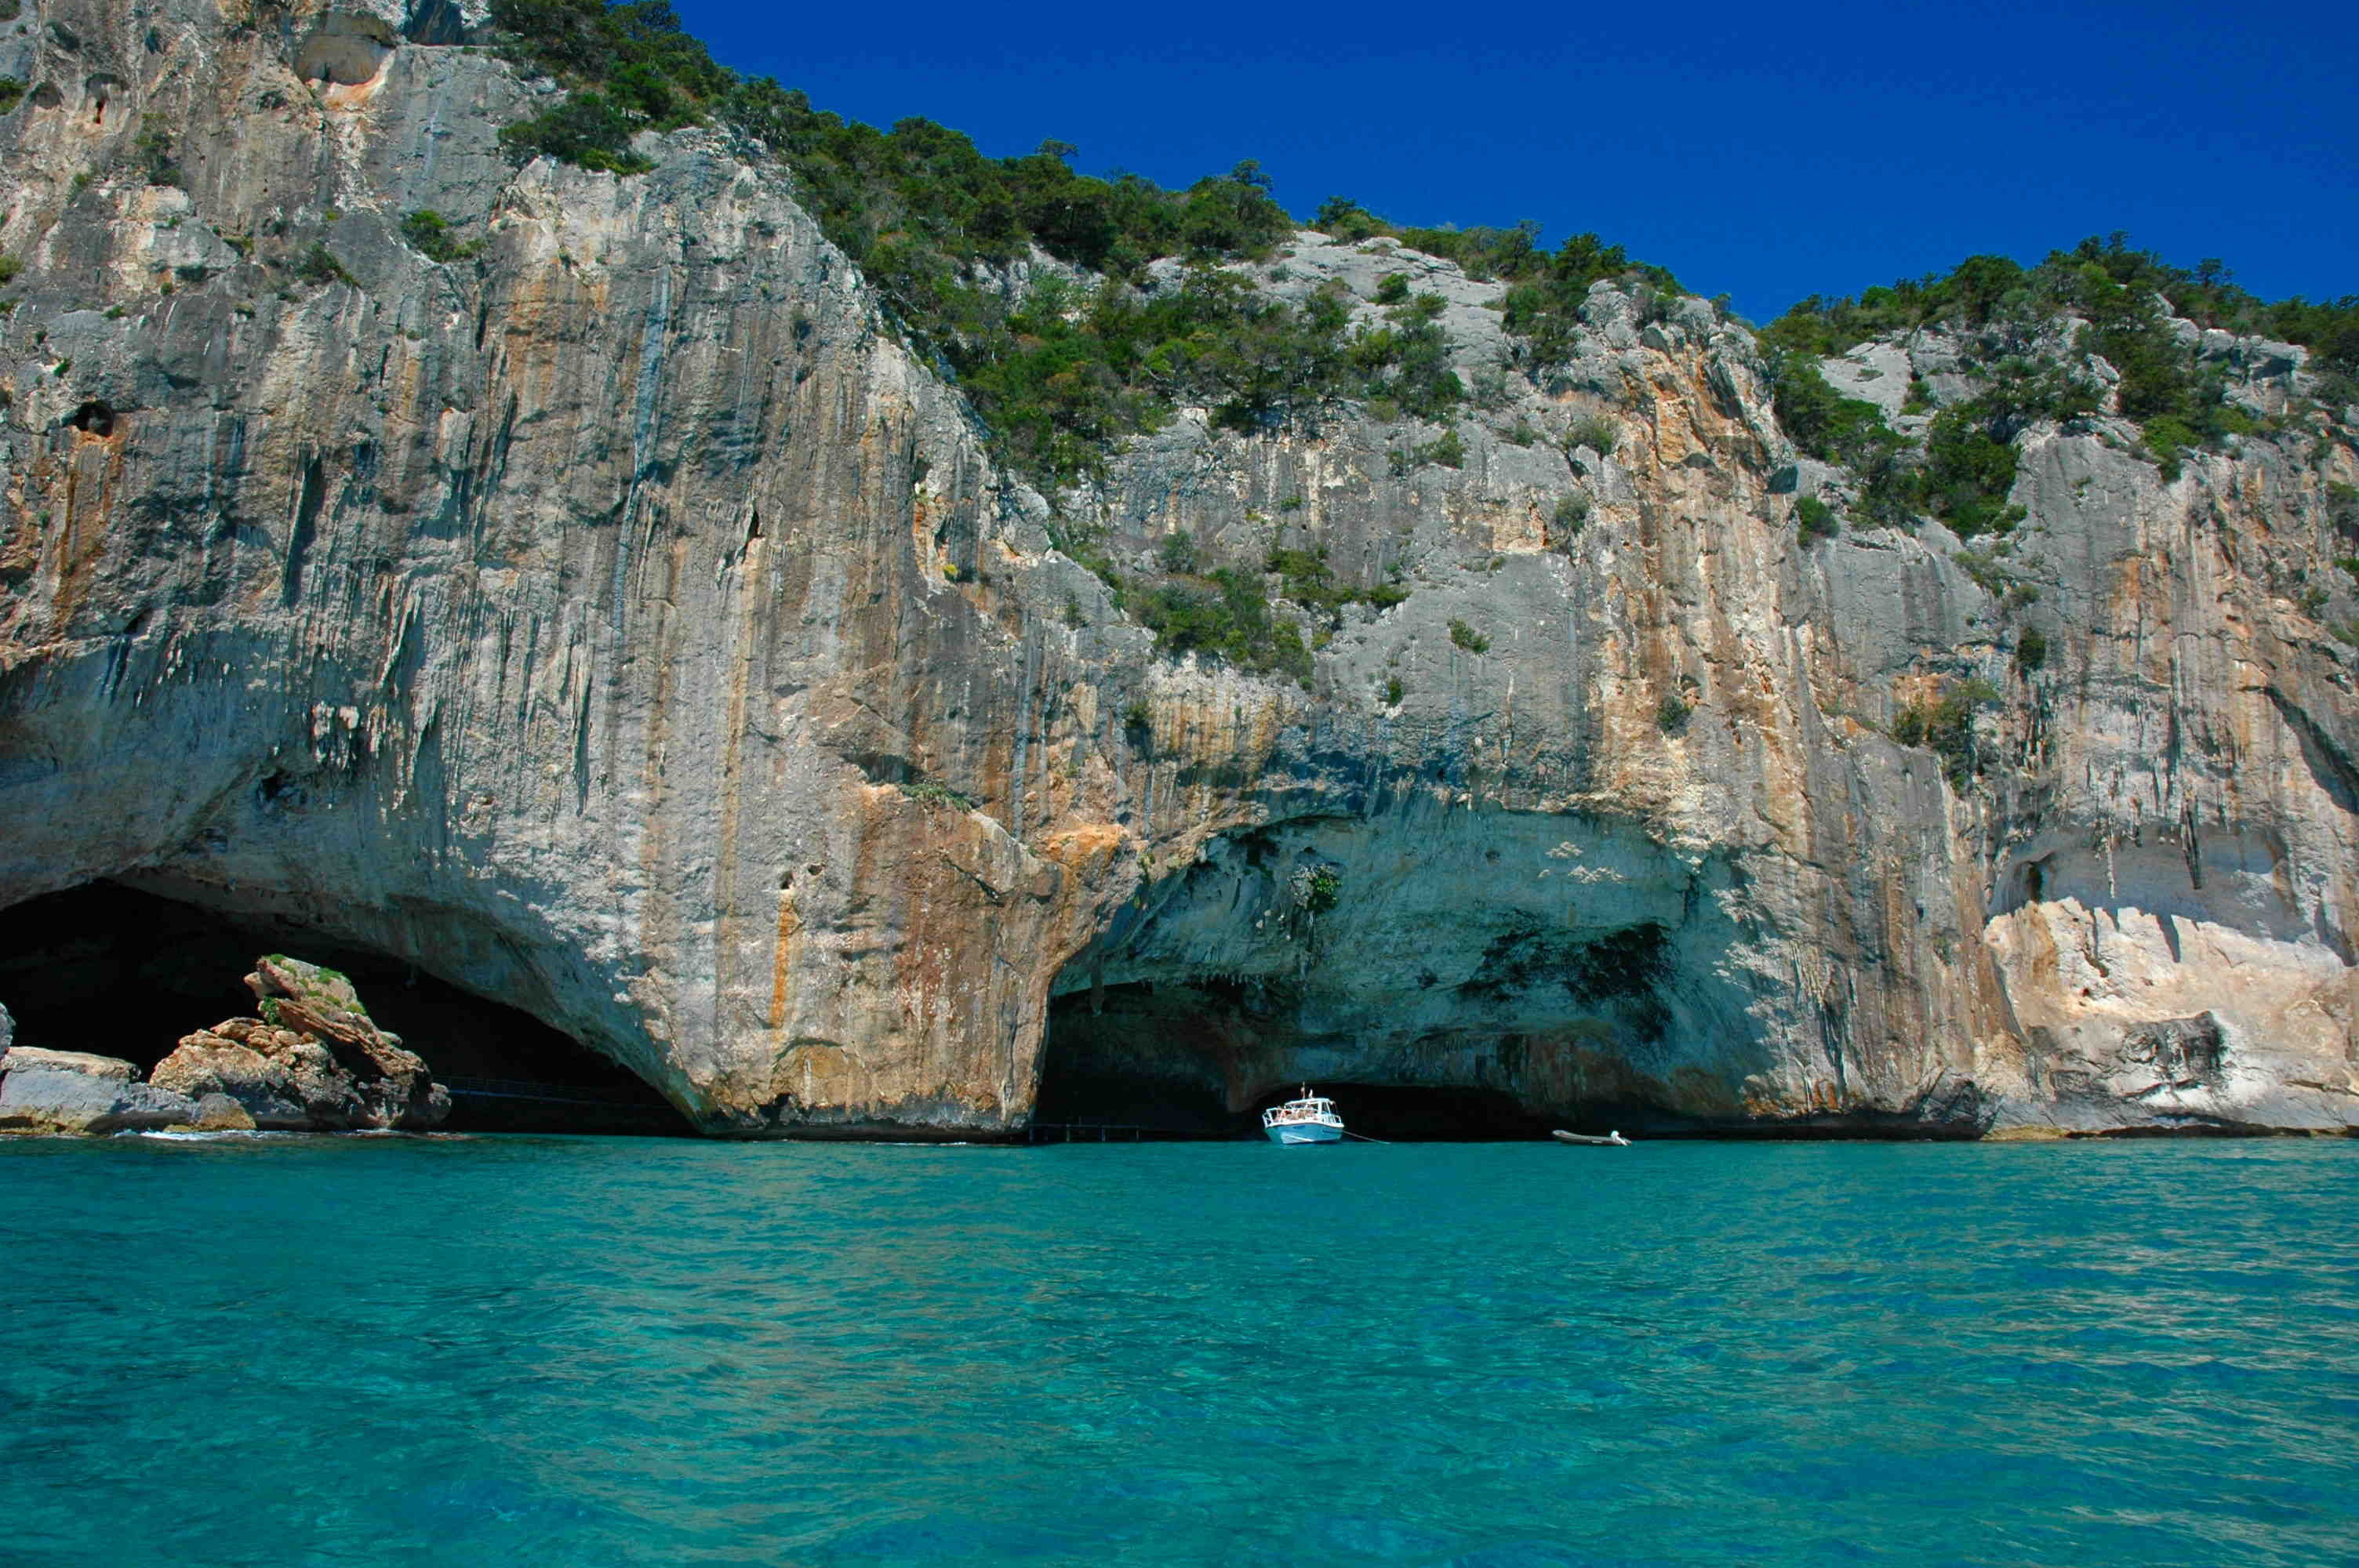 Le grotte del Bue Marino di Cala Gonone pubblicizzate come siciliane